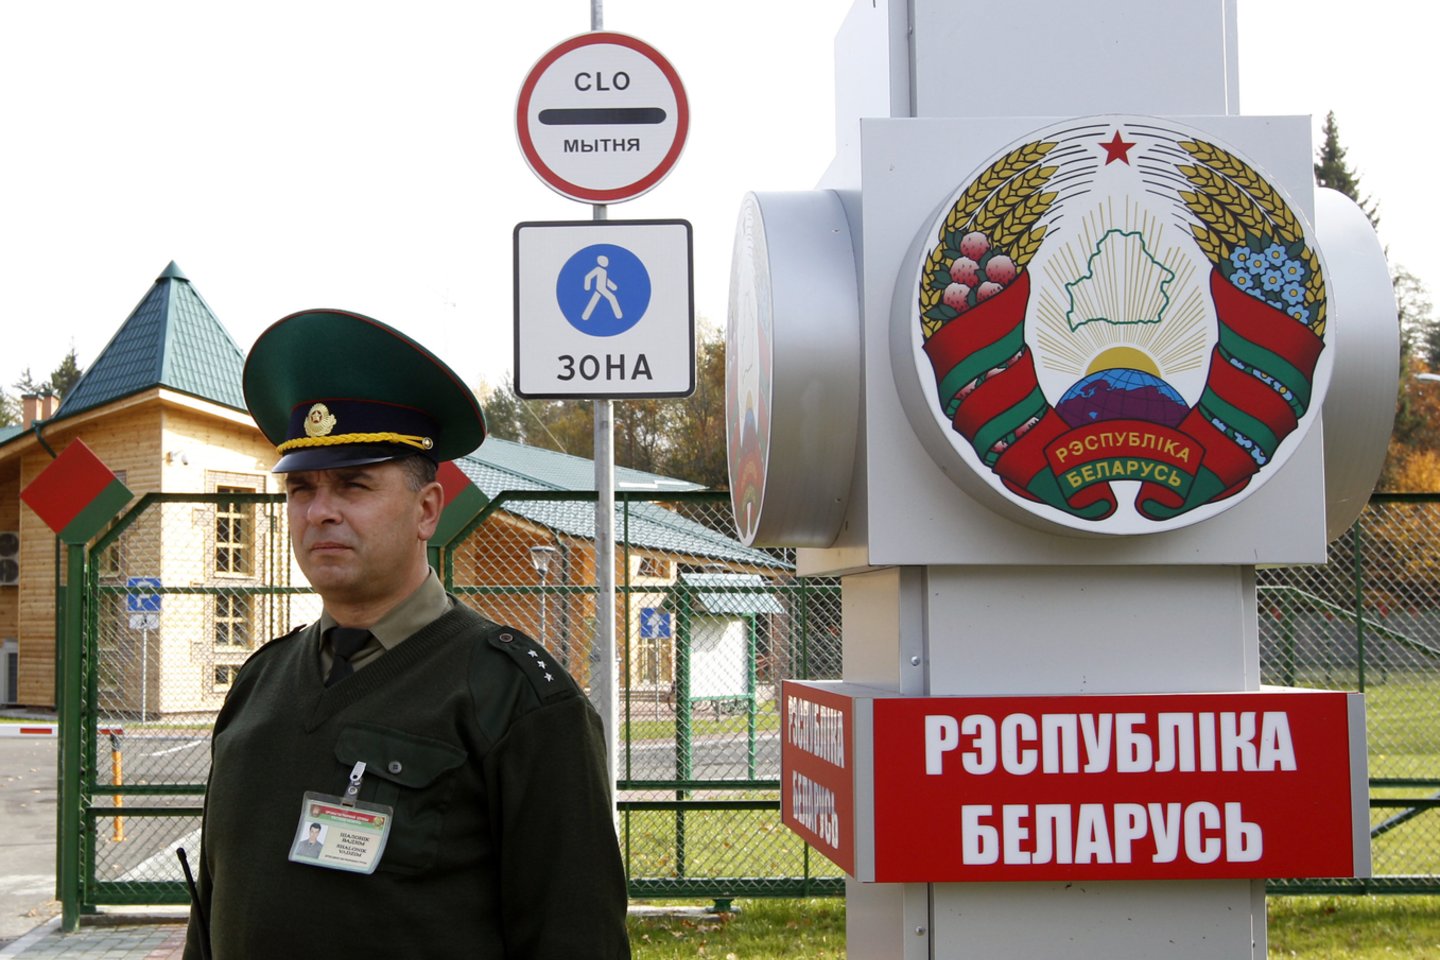 Baltarusija nepatirs jokių nuostolių, o nukentės tik Lietuva?<br>Reuters/Scanpix nuotr.